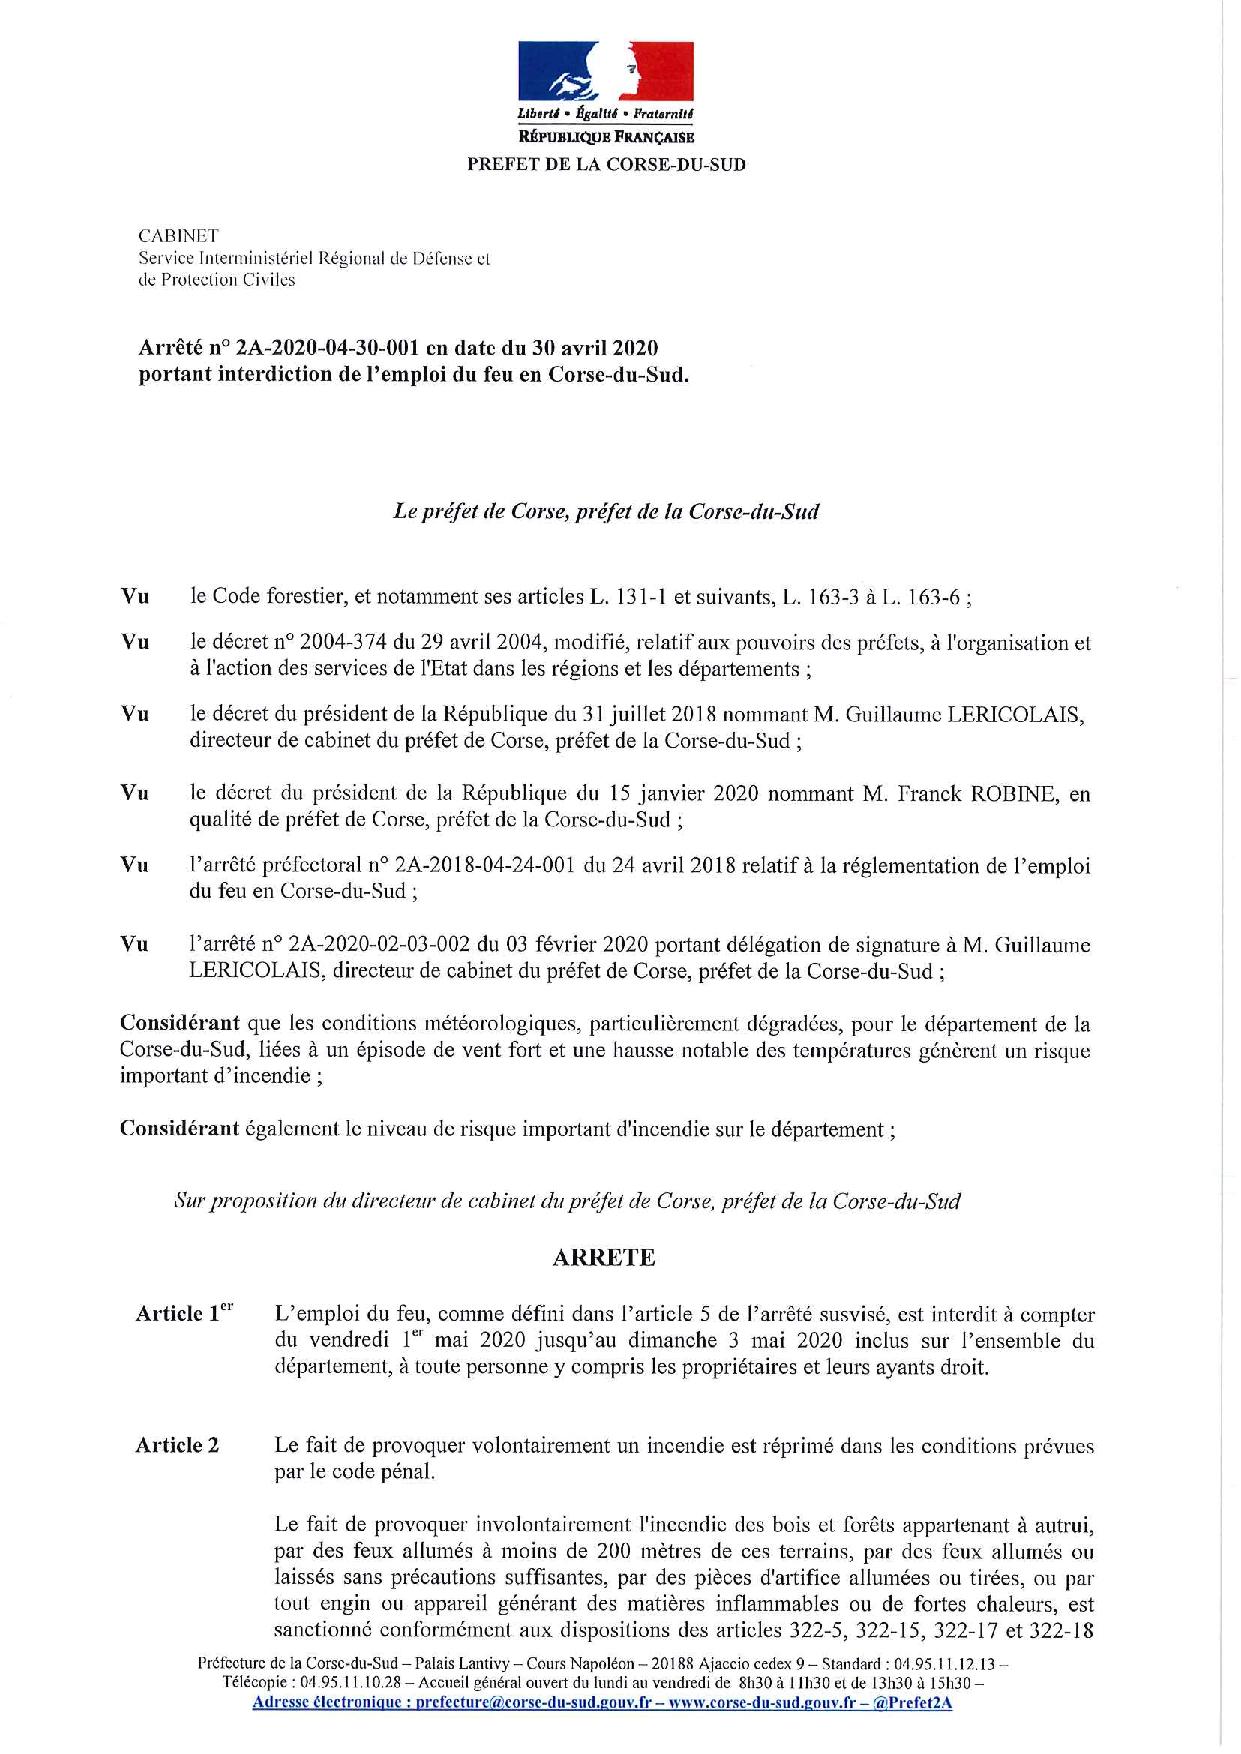 Arrêté préfectoral portant interdiction de l'emploi du feu en Corse-du-Sud du vendredi 1er mai au dimanche 3 mai